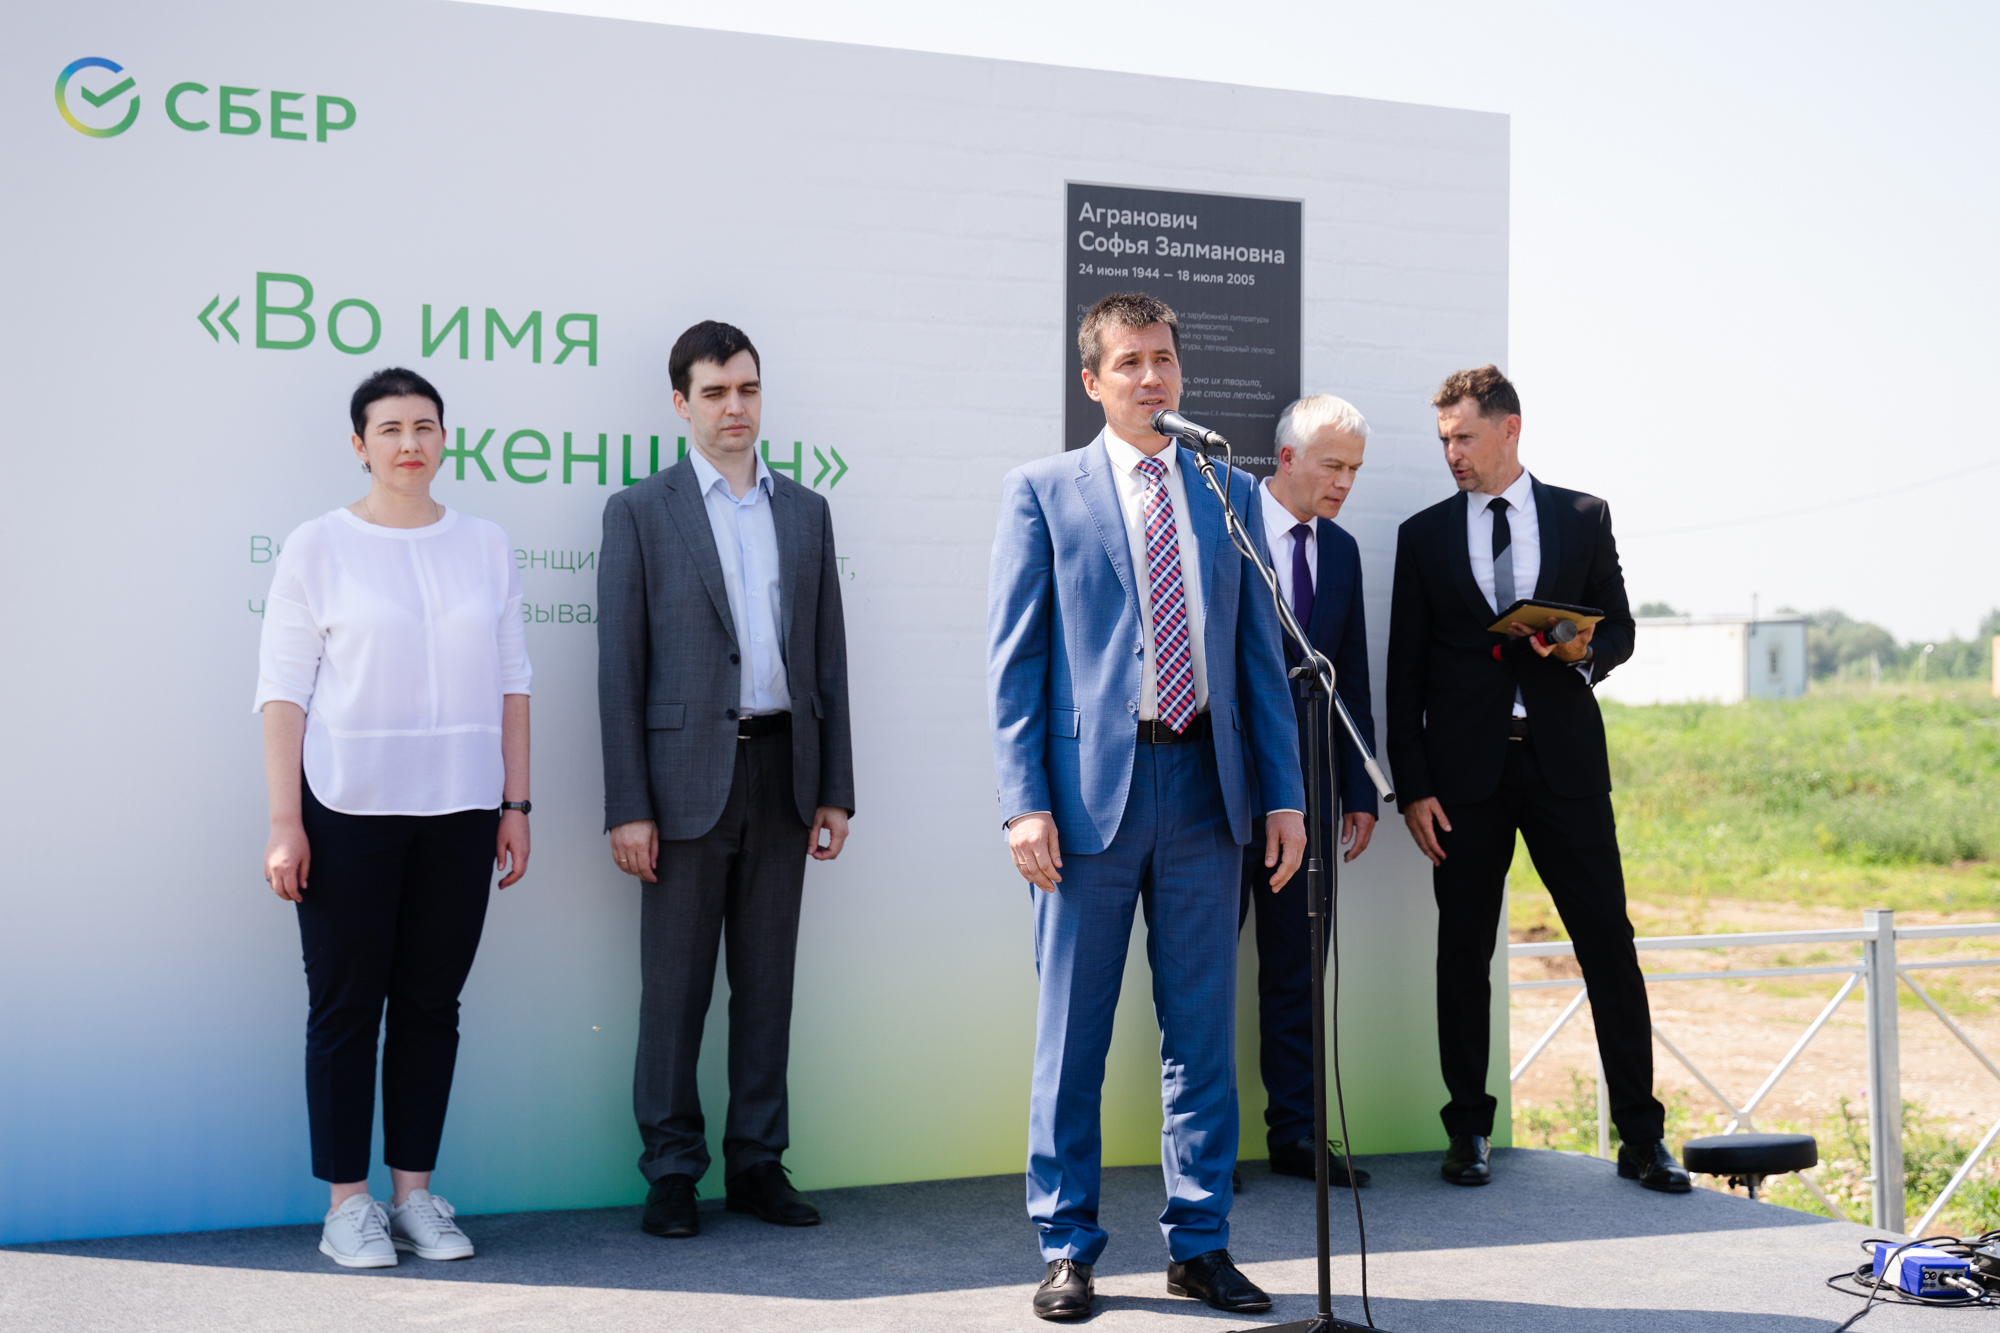 В Самаре по инициативе Сбера при поддержке ГК «Амонд» переименовали улицу в честь филолога Софьи Агранович